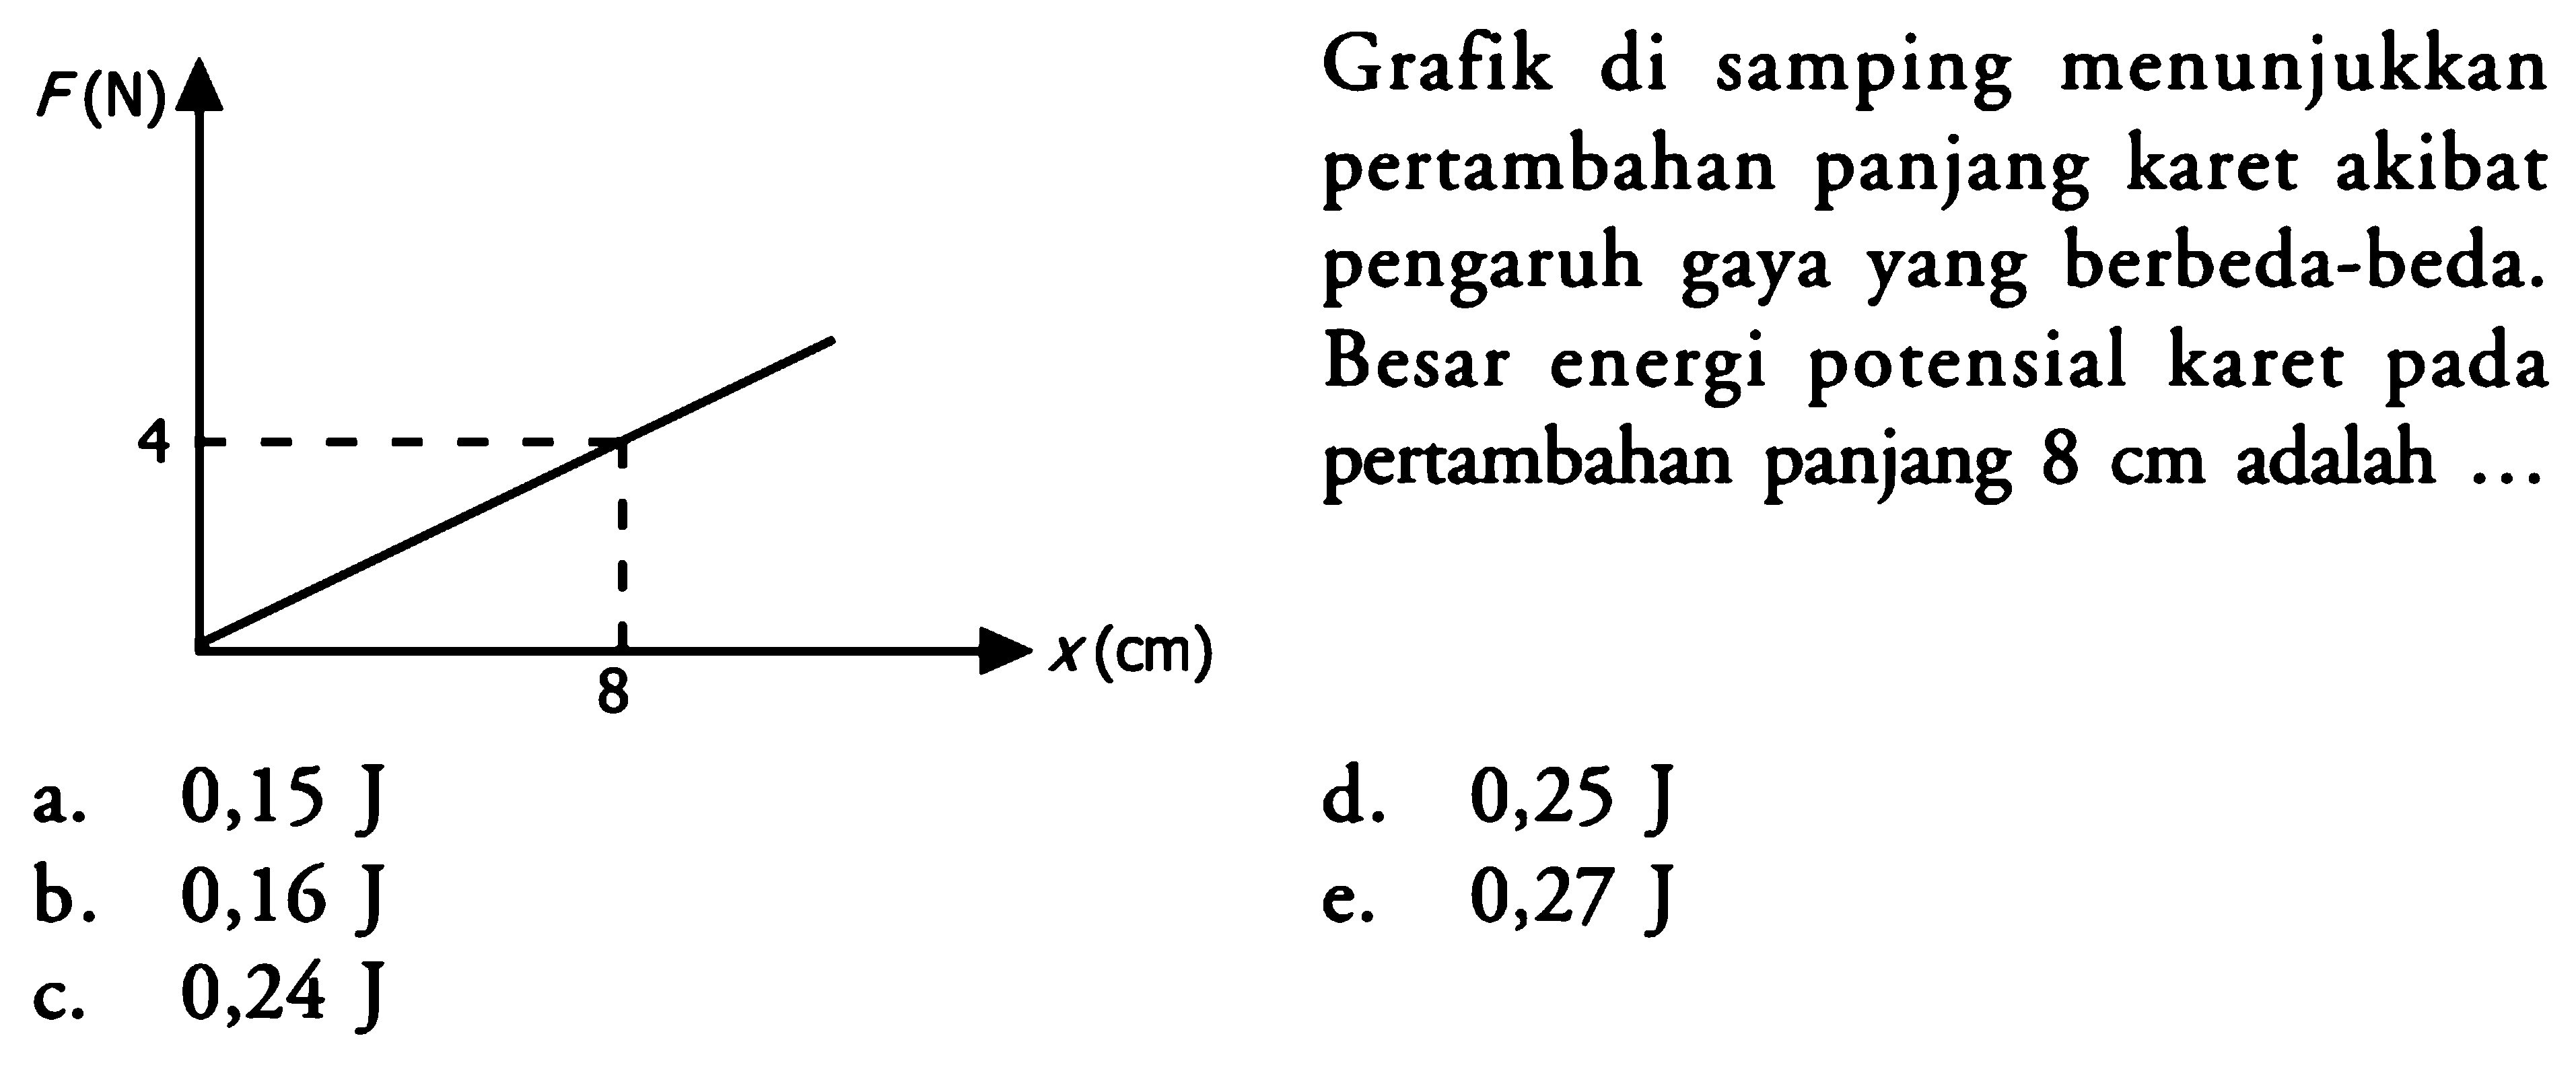 F(N) 4 8 x(cm) Grafik di samping menunjukkan pertambahan panjang karet akibat pengaruh gaya yang berbeda-beda. Besar energi potensial karet pada pertambahan panjang 8 cm adalah ... a. 0,15 J b. 0,16 J c. 0,24 J d. 0,25 J e. 0,27 J 